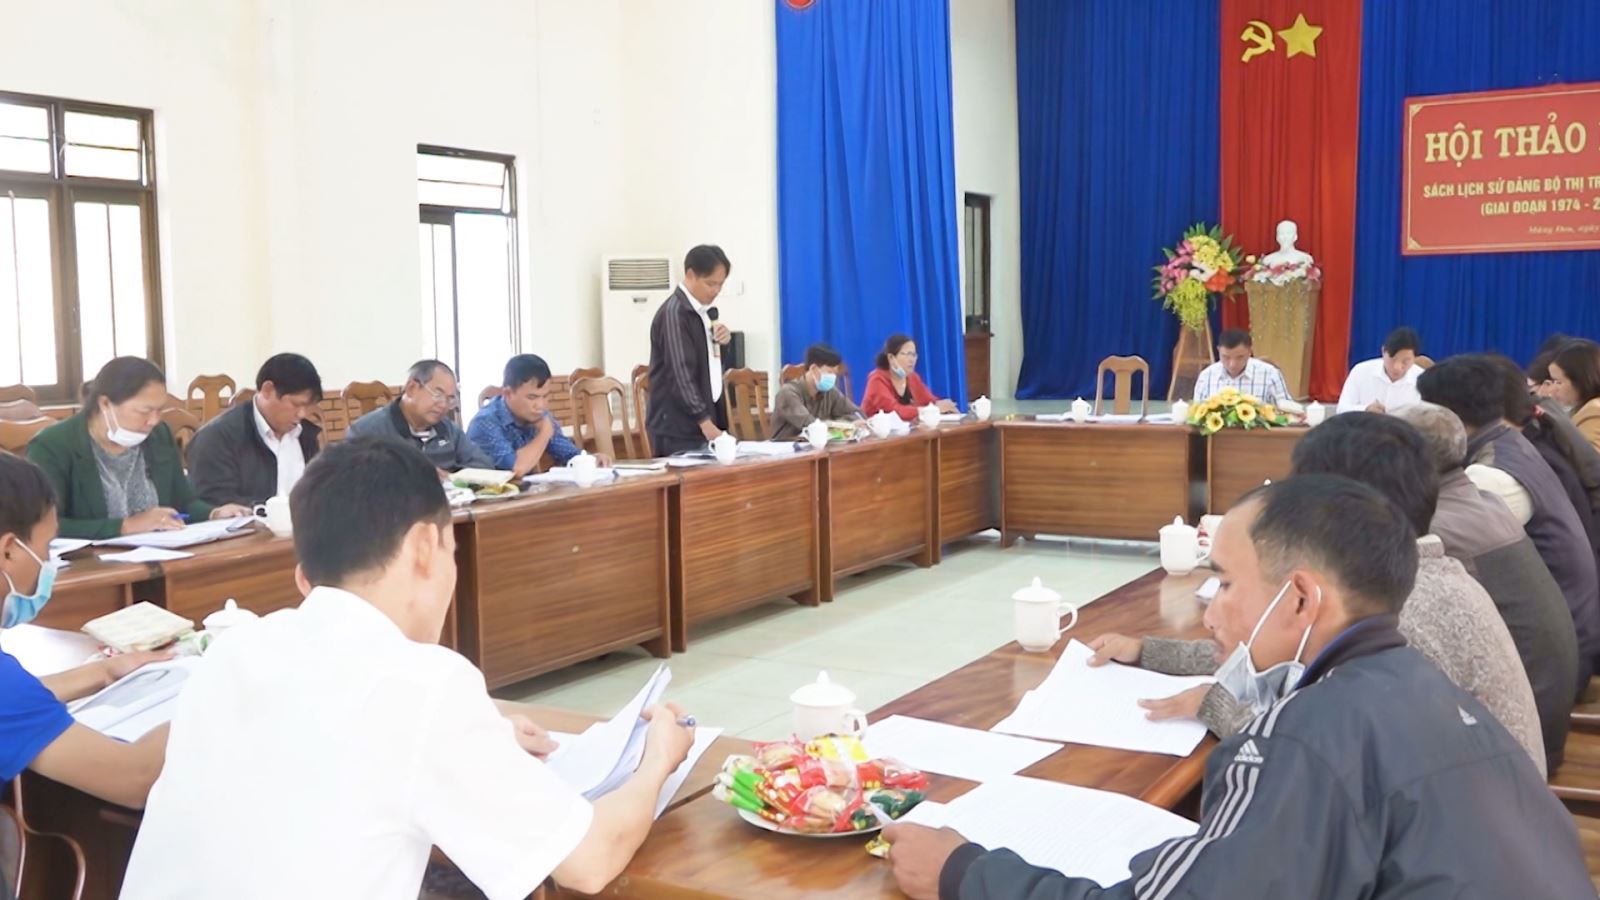 Hội thảo góp ý nội dung Sách lịch sử Đảng bộ thị trấn Măng Đen  giai đoạn 1974-2020